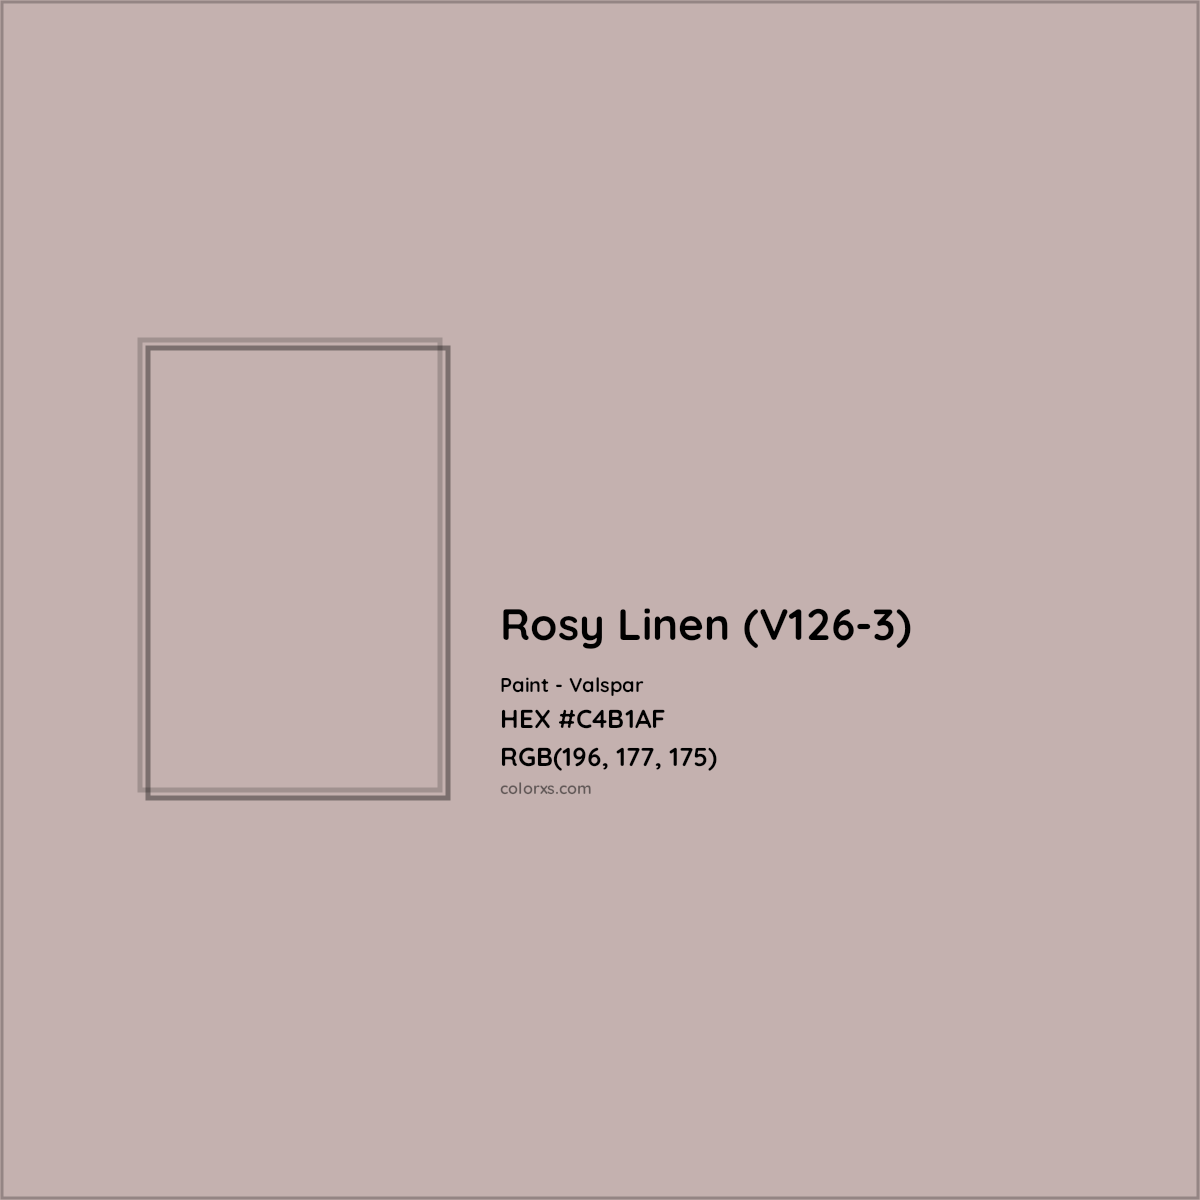 HEX #C4B1AF Rosy Linen (V126-3) Paint Valspar - Color Code